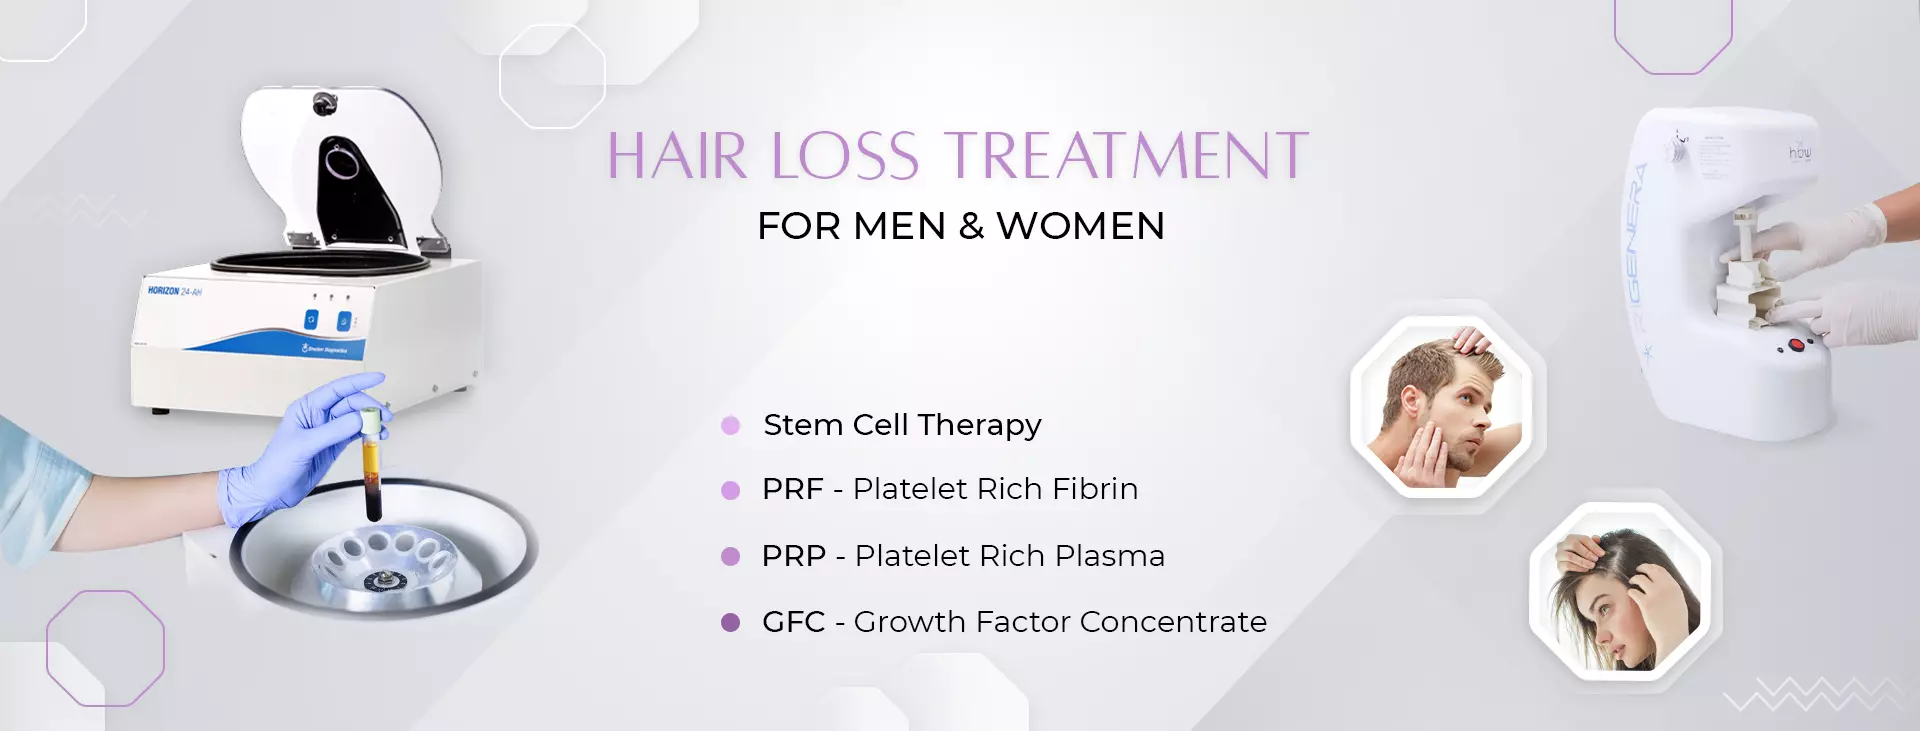 hair loss treatment in delhi